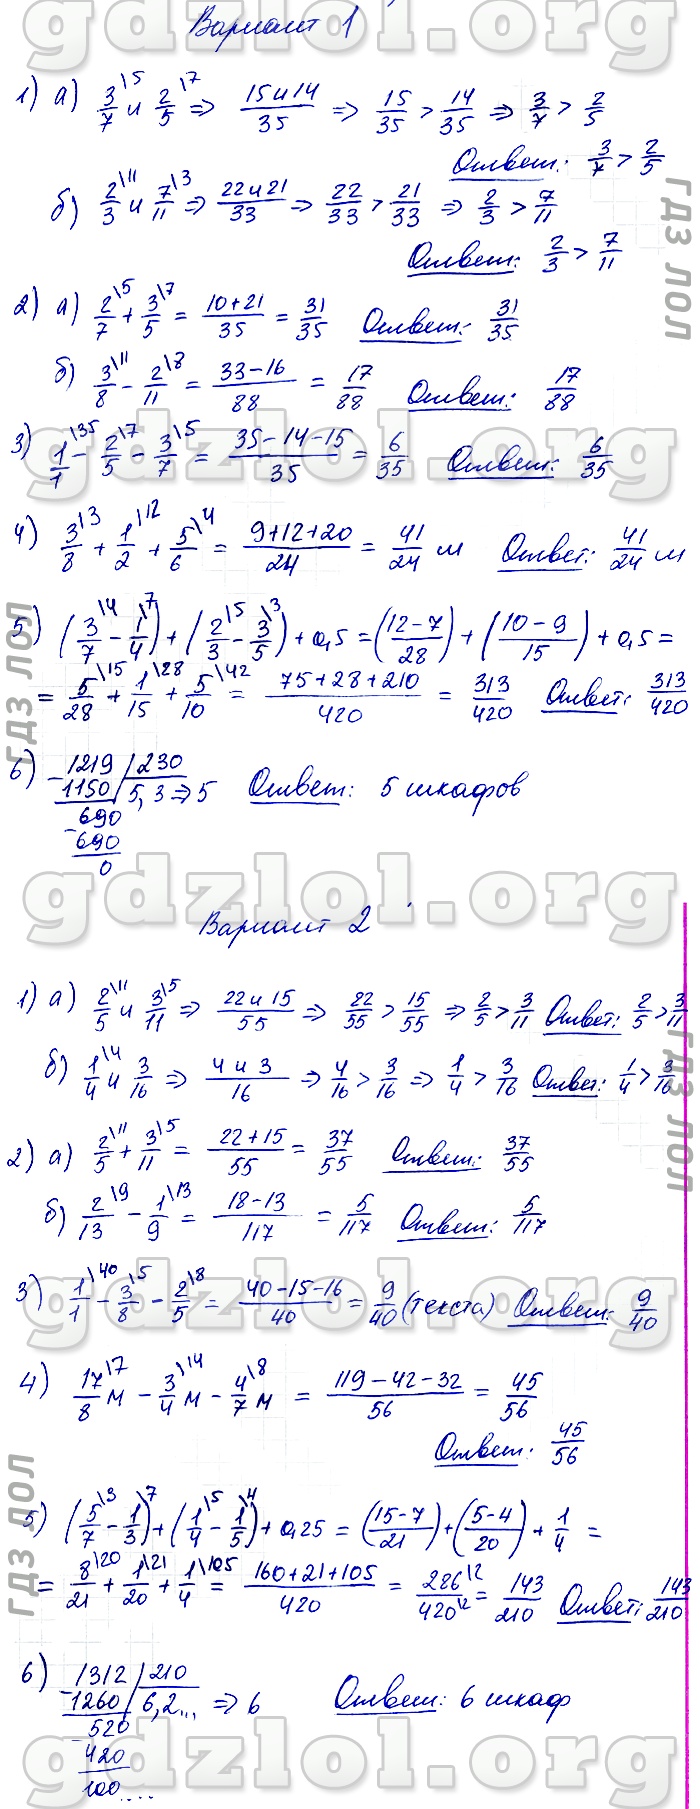 Математика 5 Класс Контрольная Работа Попова